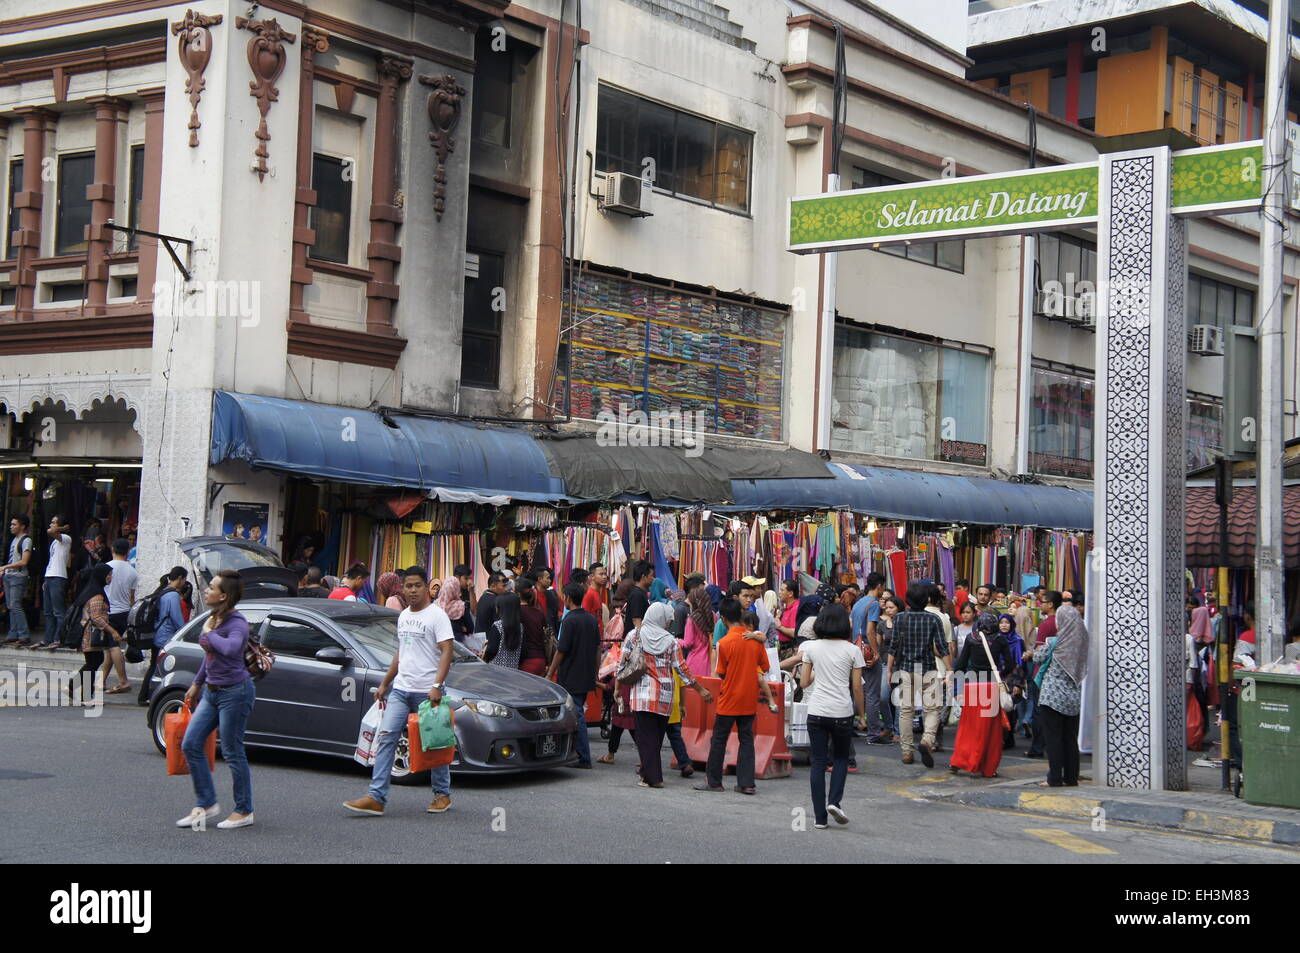 Malay street bazaar at Jalan Tuanku Abdul Rahman, Kuala Lumpur, Malaysia Stock Photo